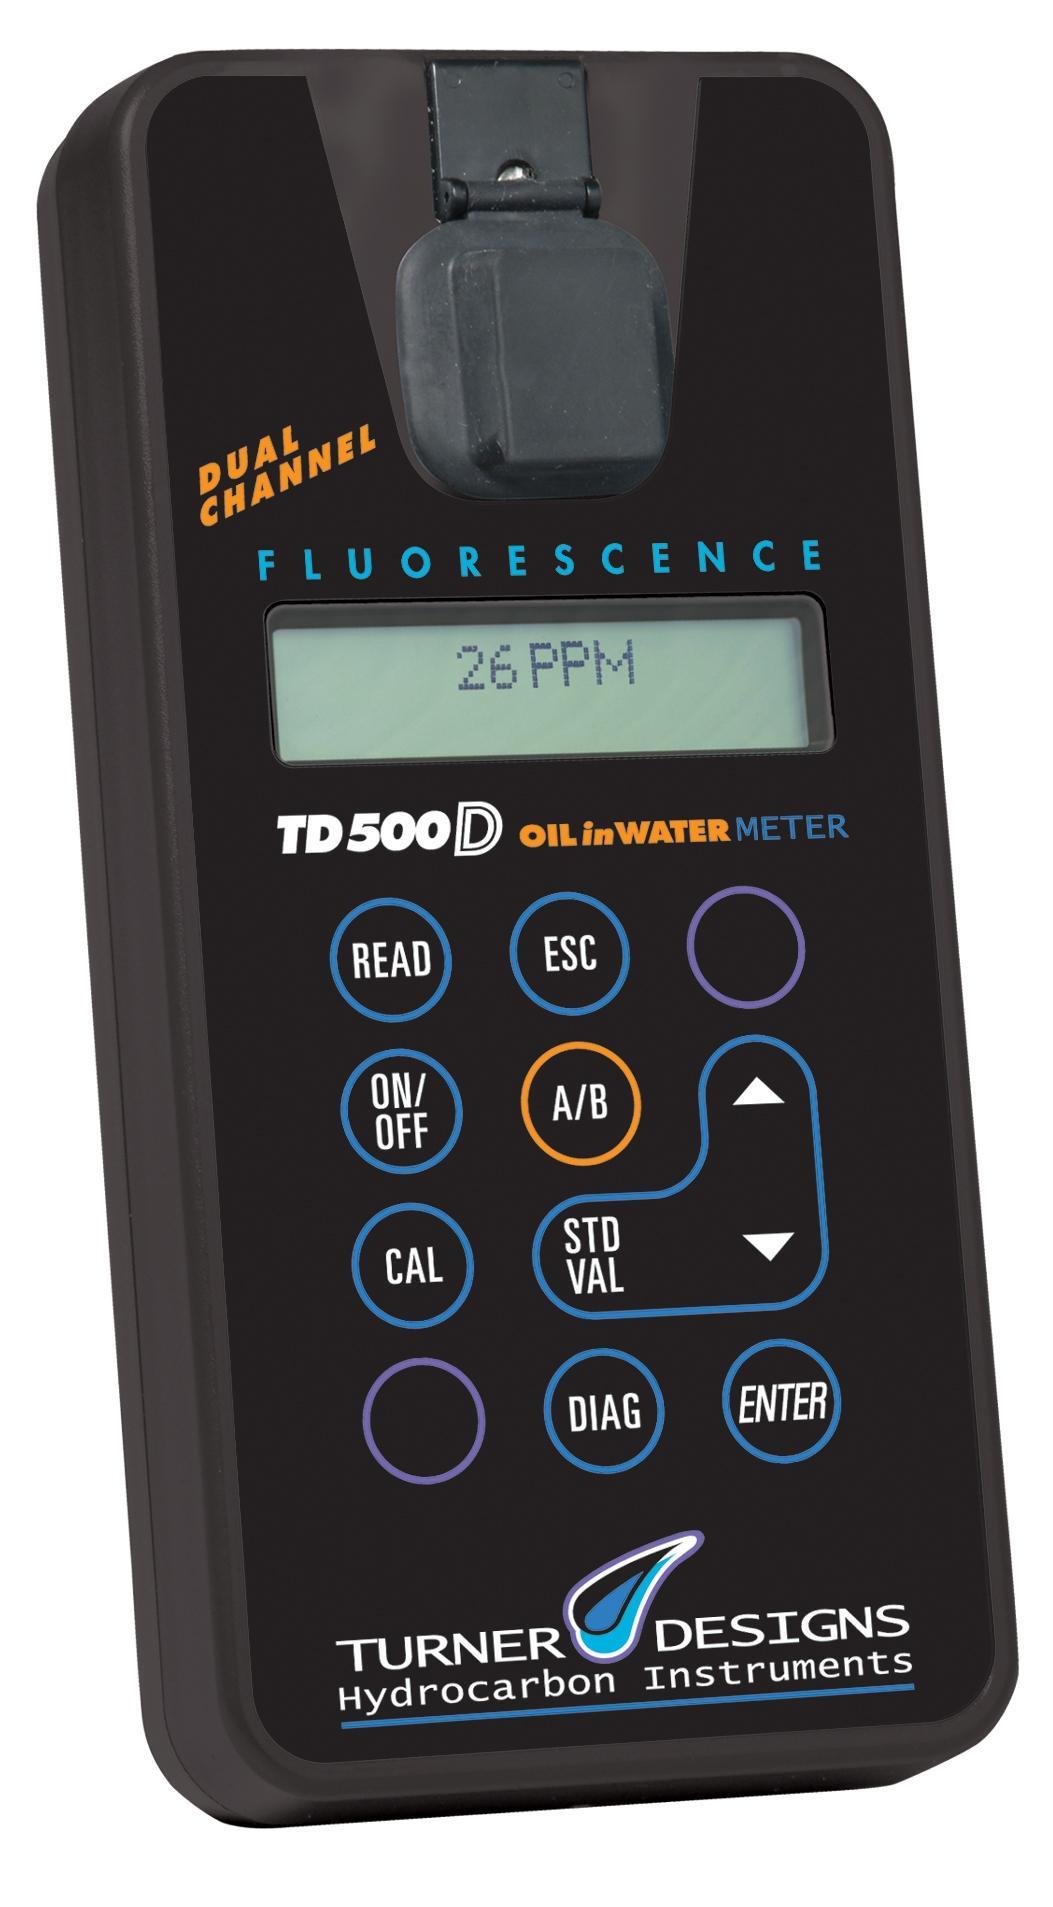  荧光析油仪、石油类分析仪TD-500D